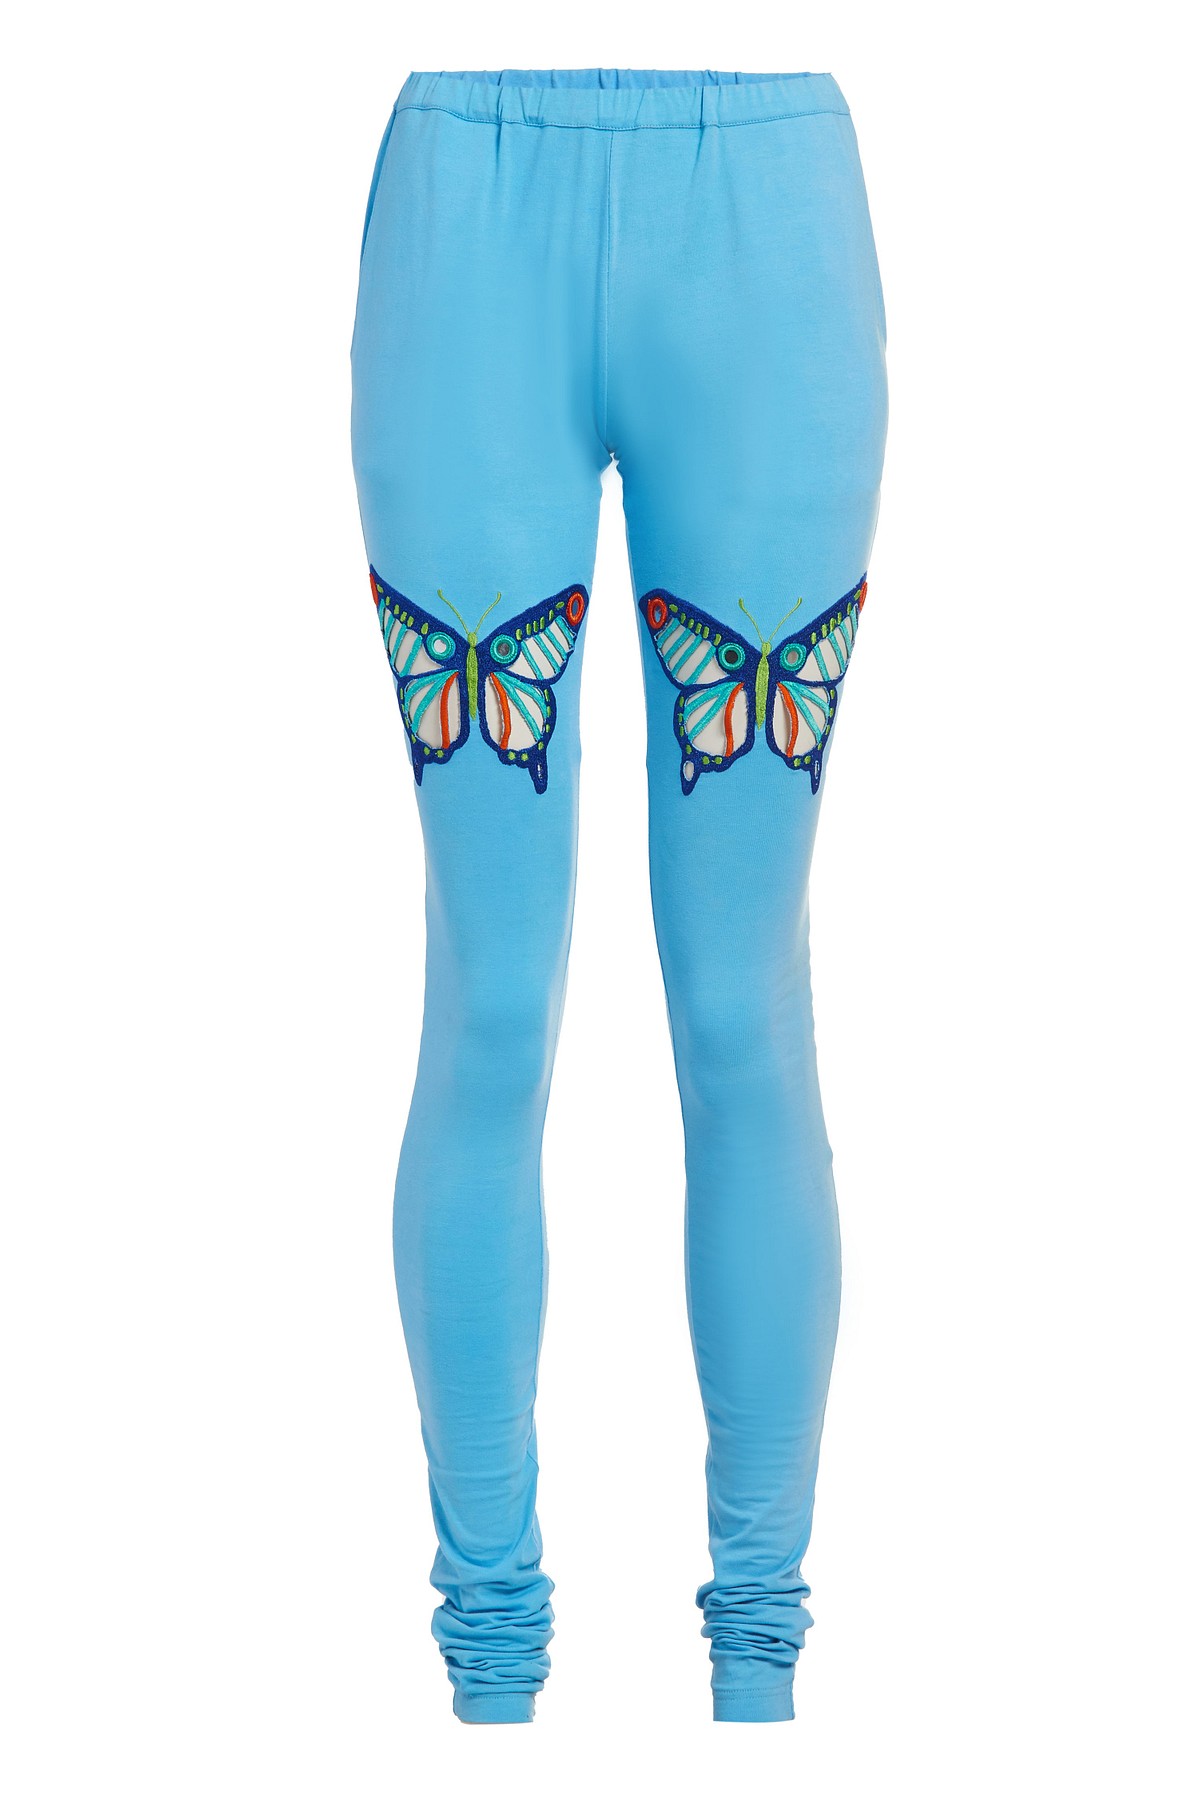 Churidaar Leggings with Eyelet Butterflies